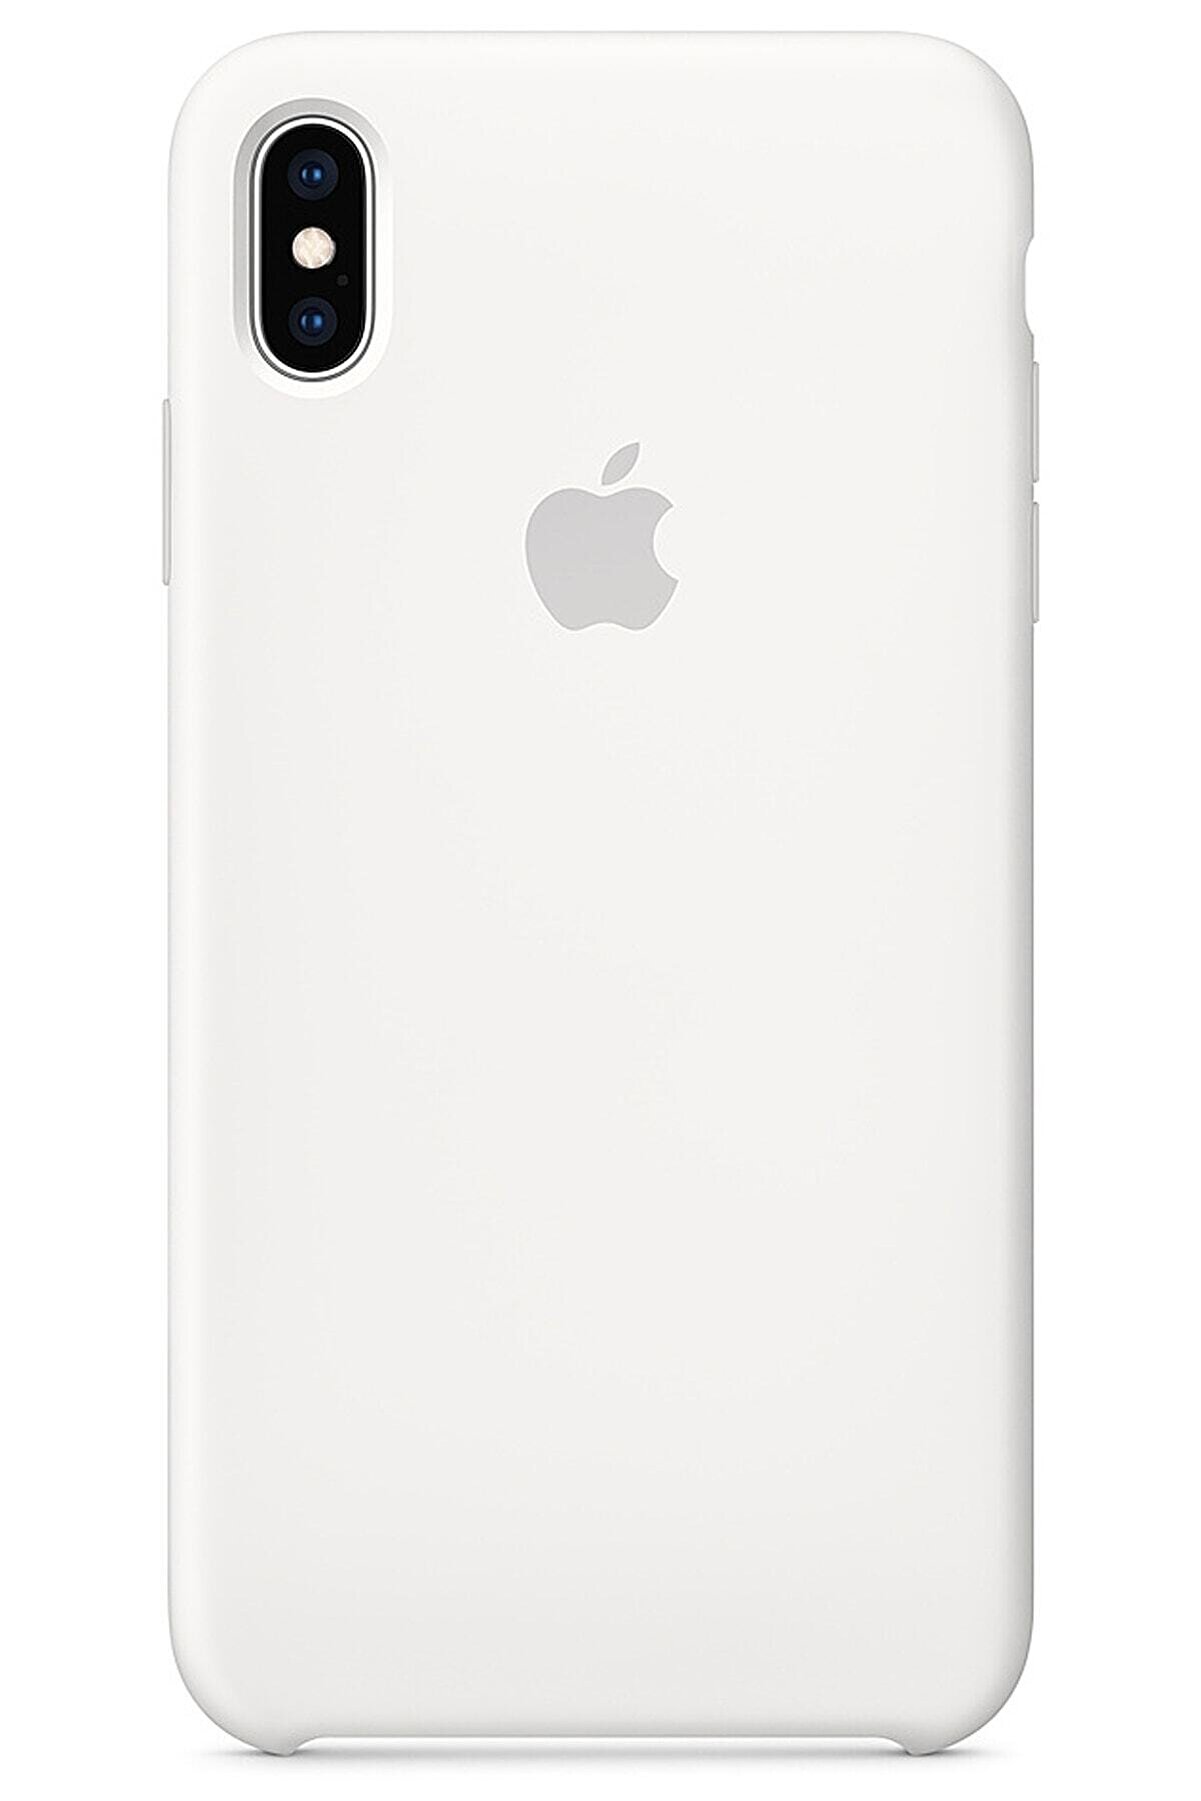 Ebotek Iphone Xs Max Kılıf Silikon Içi Kadife Lansman Beyaz